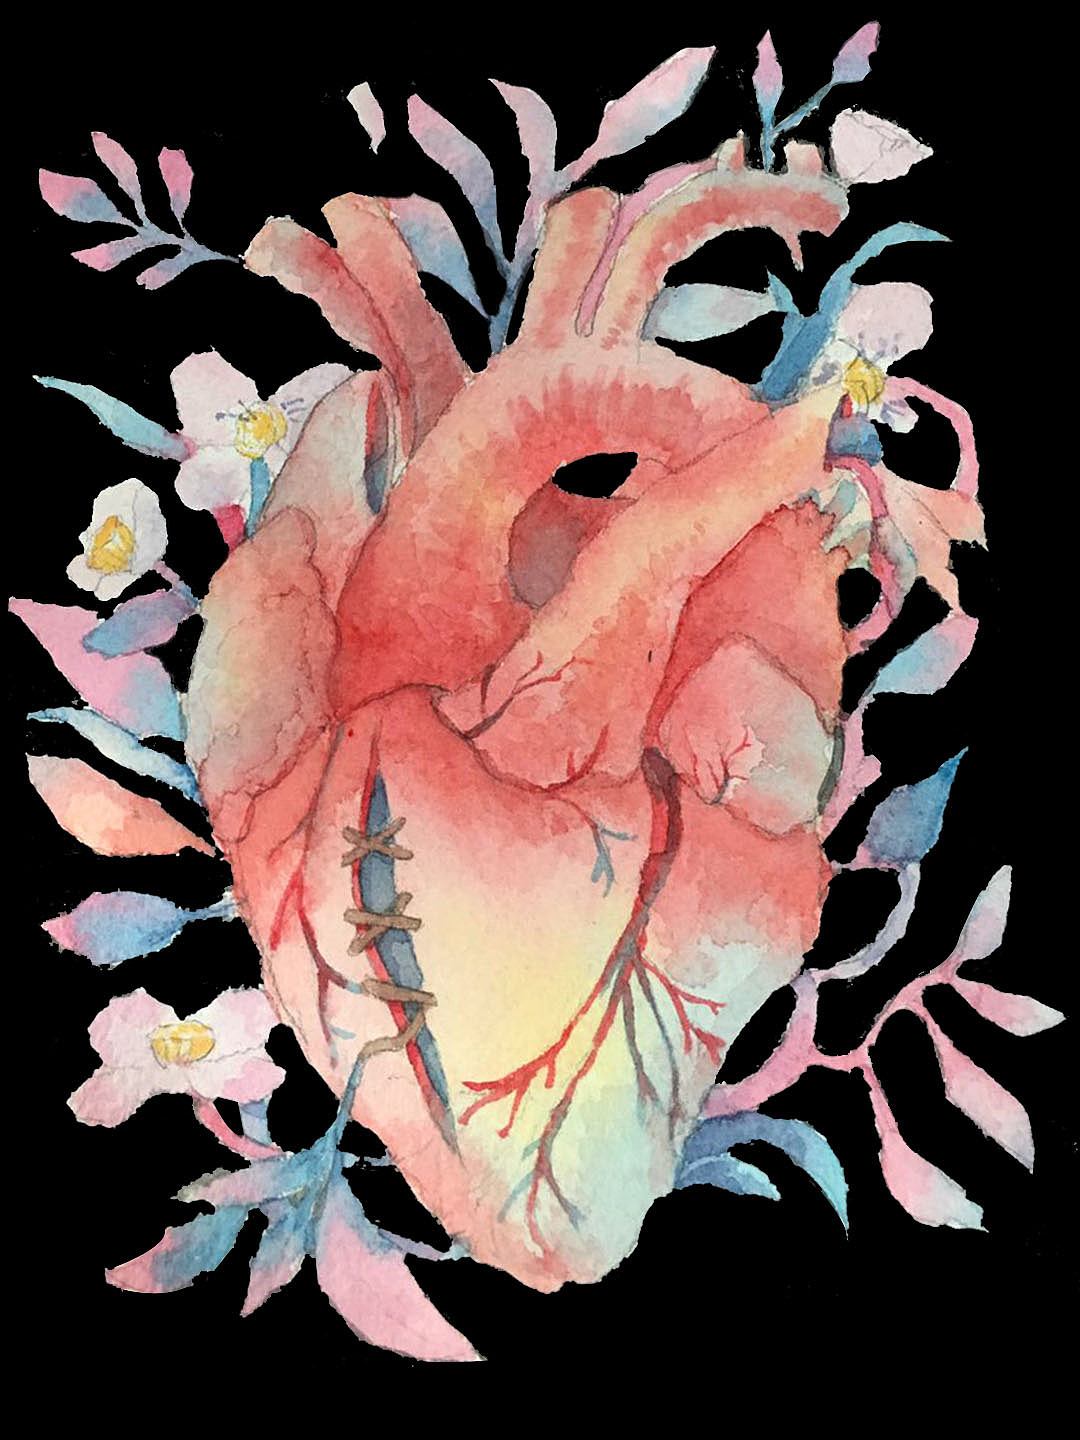 261.心脏的外形和血管 (前面观)-基础医学-医学